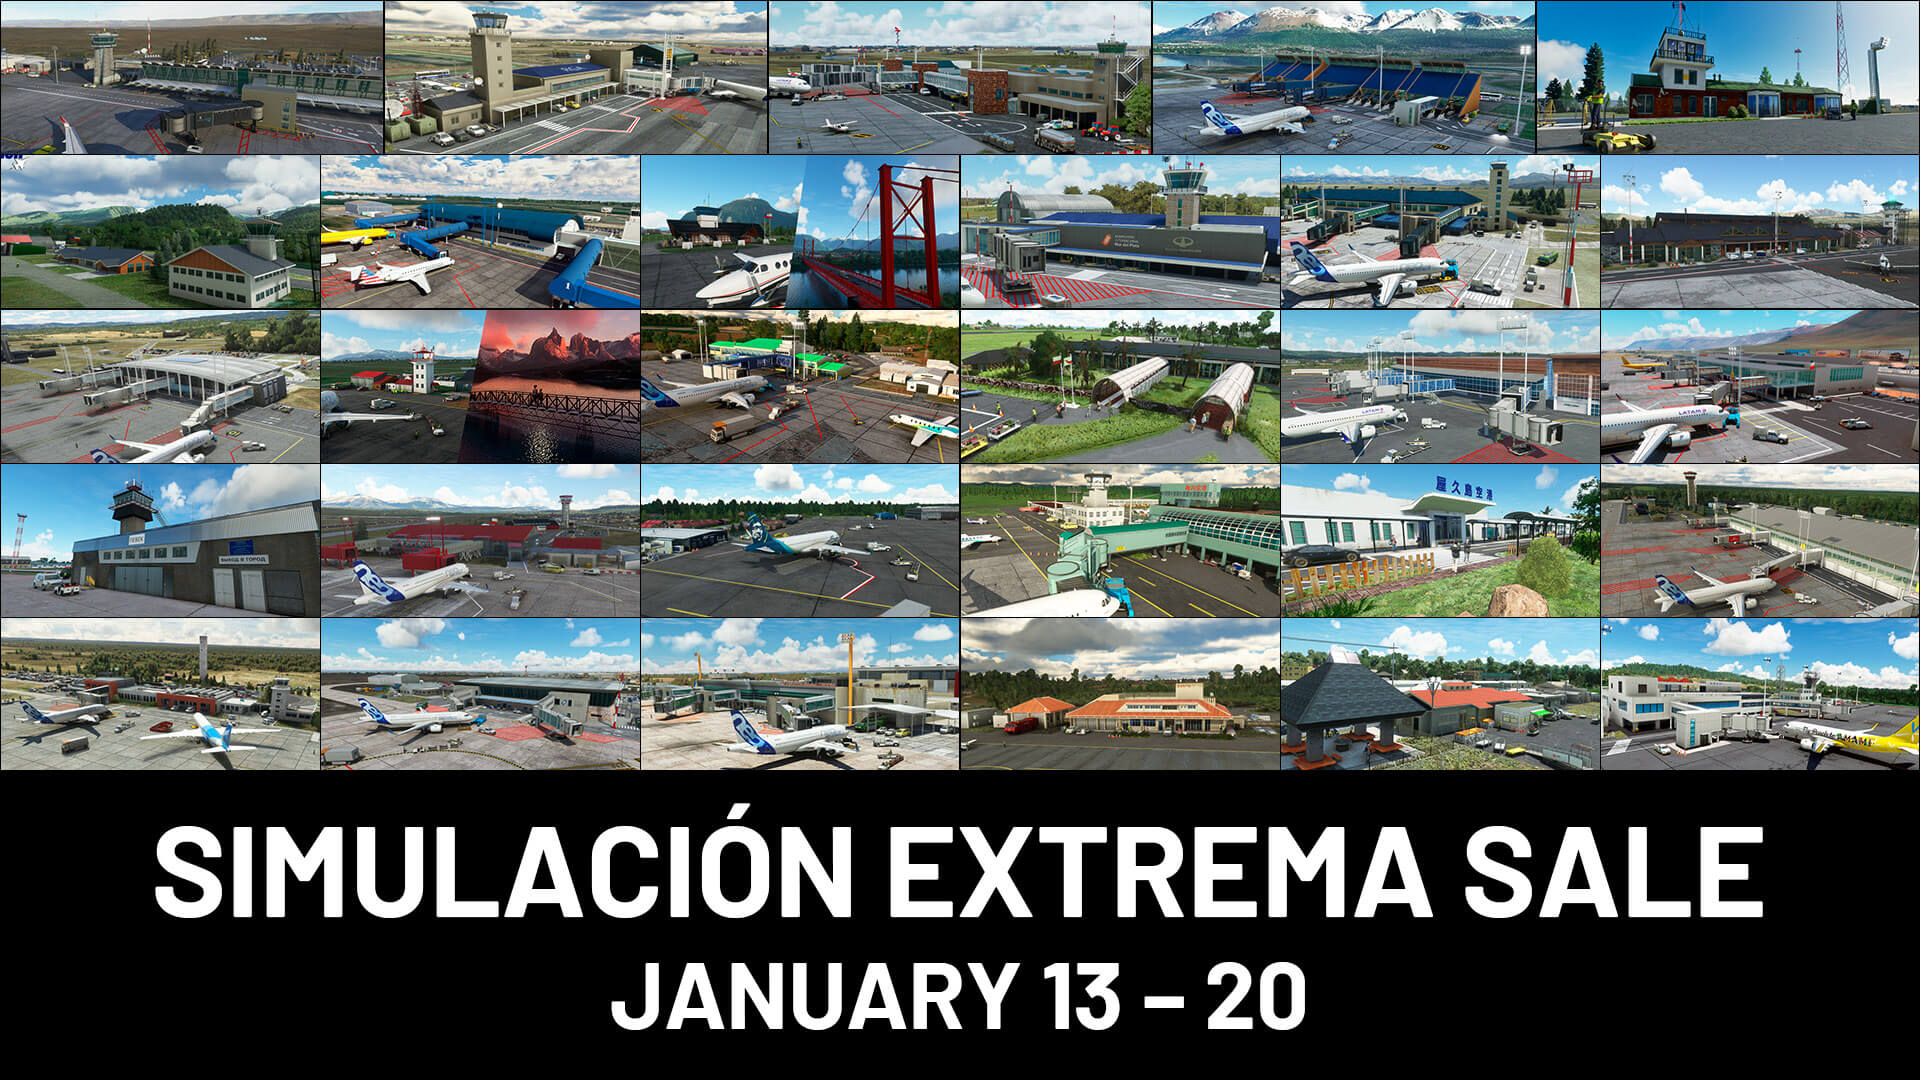 Simulación Extrema Sale, January 13-20